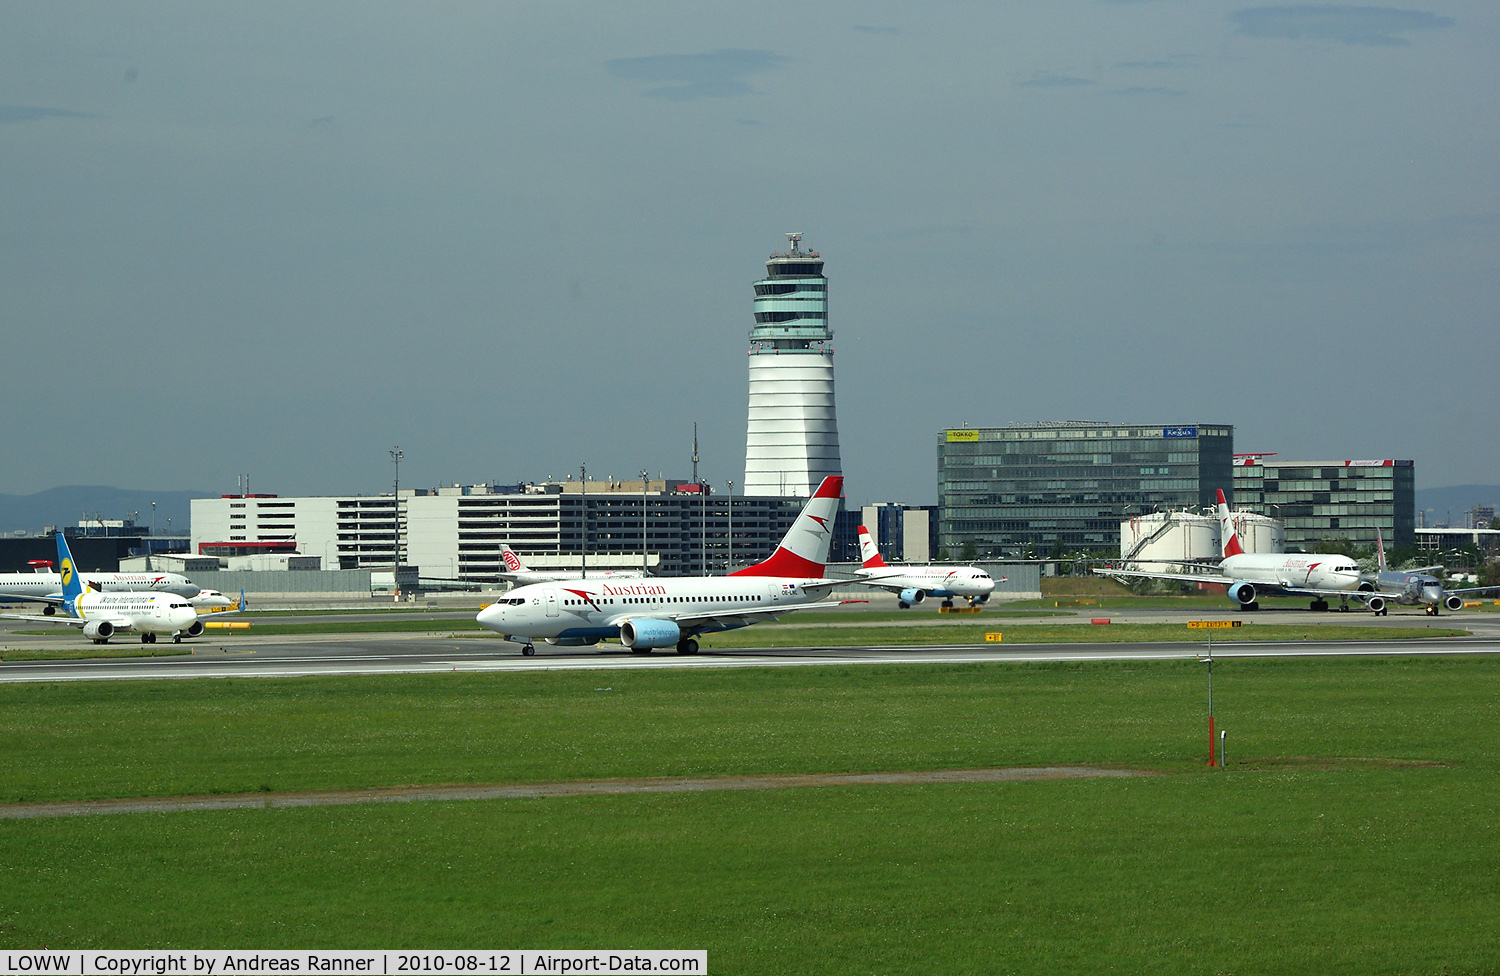 Vienna International Airport, Vienna Austria (LOWW) - Line up for departure